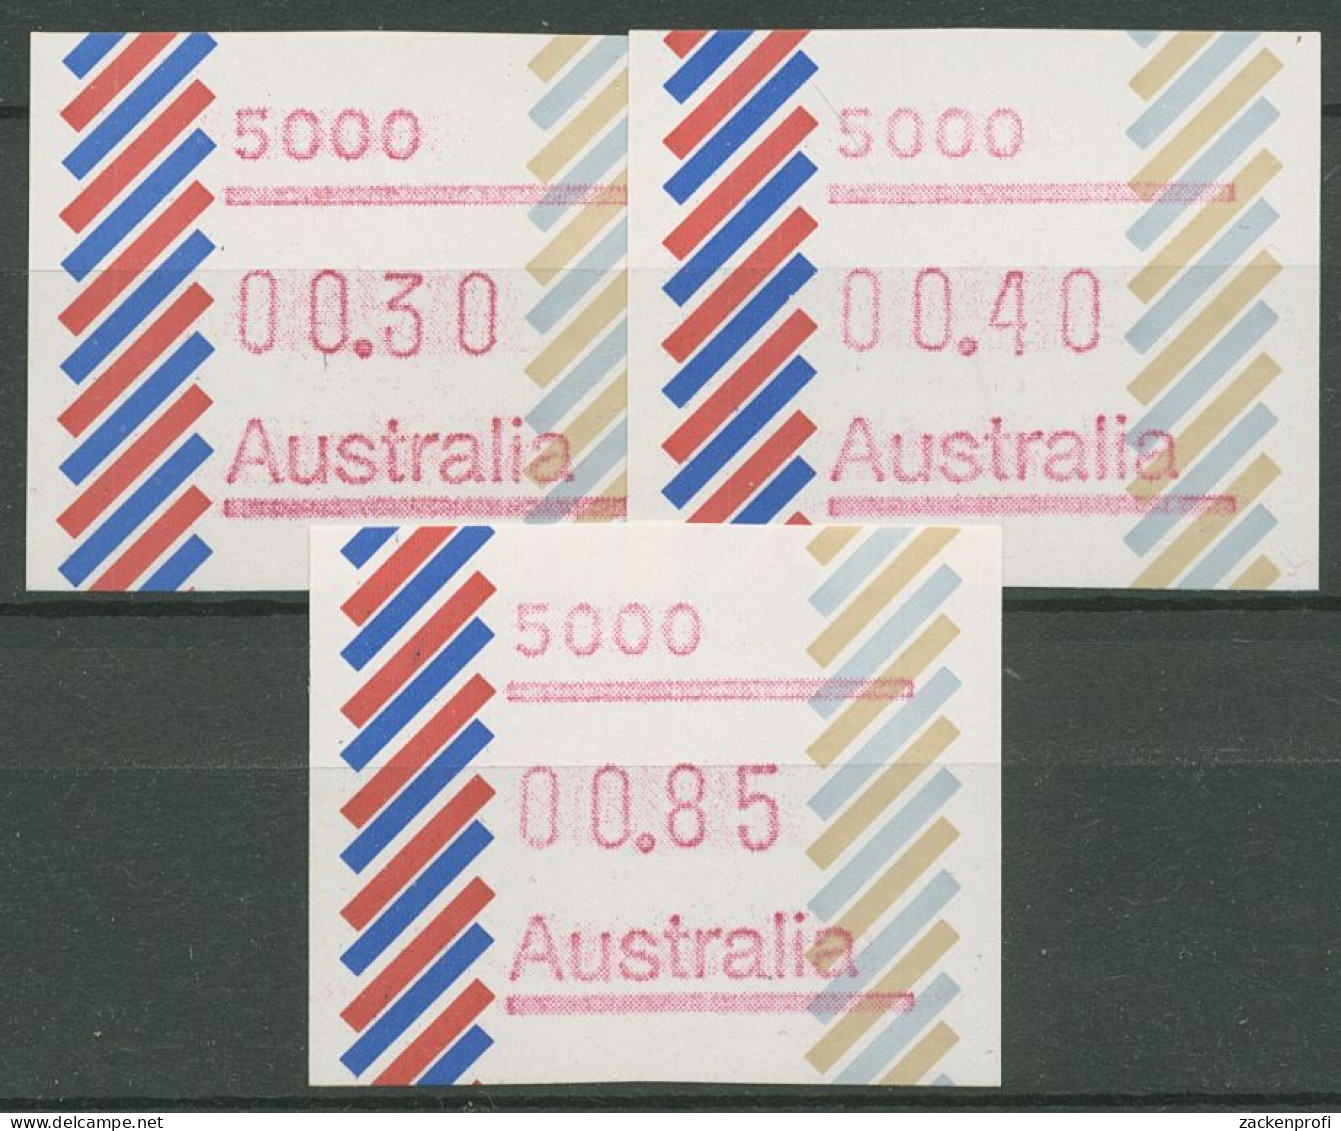 Australien 1984 Balken Tastensatz Automatenmarke 1 S1, 5000 Postfrisch - Machine Labels [ATM]